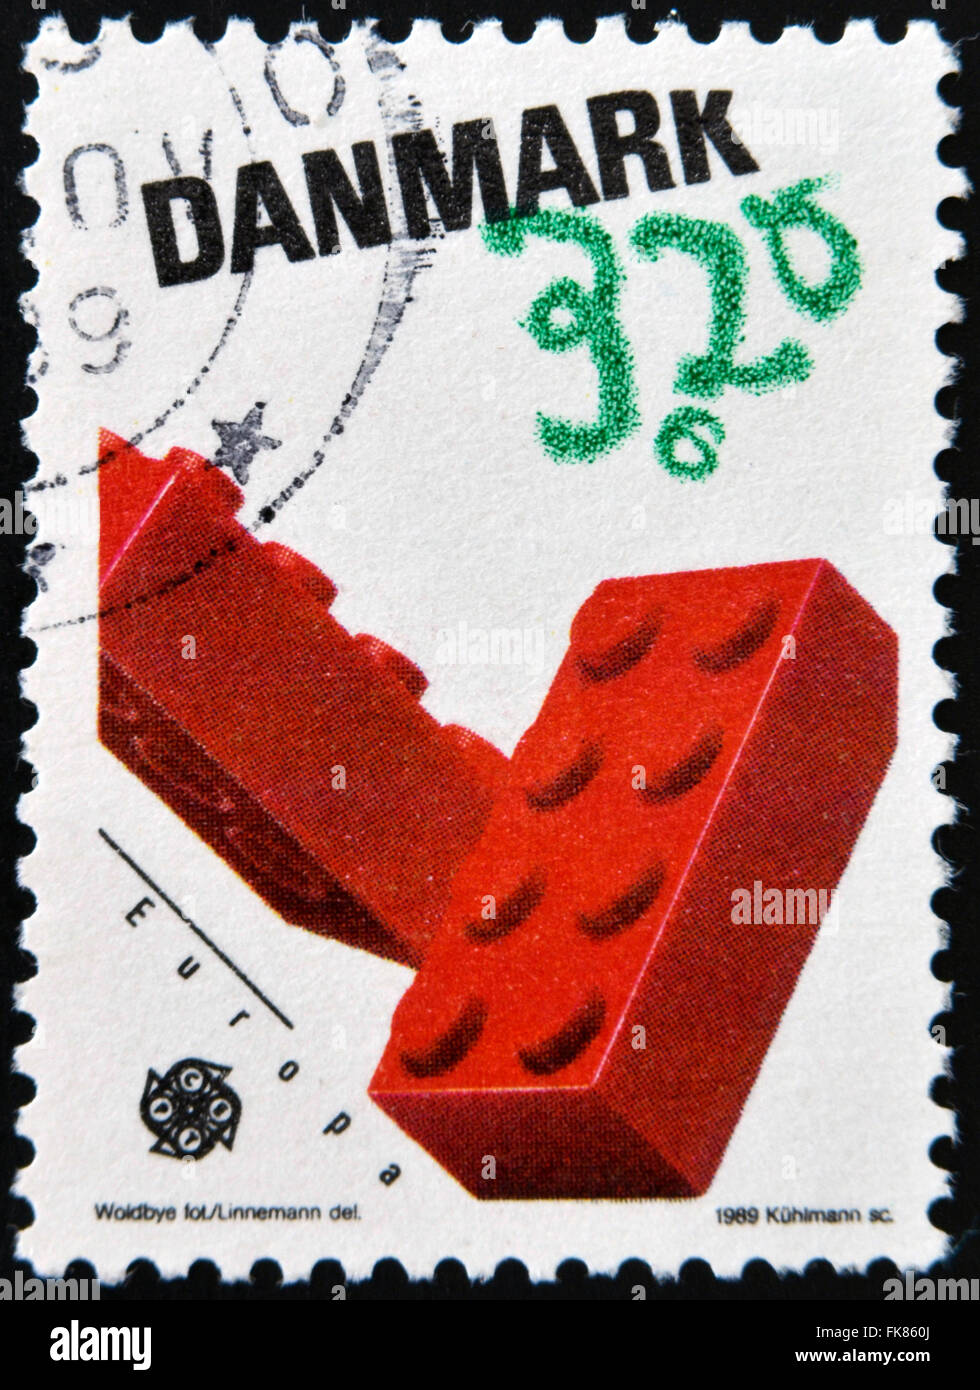 Danemark - circa 1989 : timbre imprimé au Danemark montre les blocs de Lego, jouets pour enfants, vers 1989 Banque D'Images